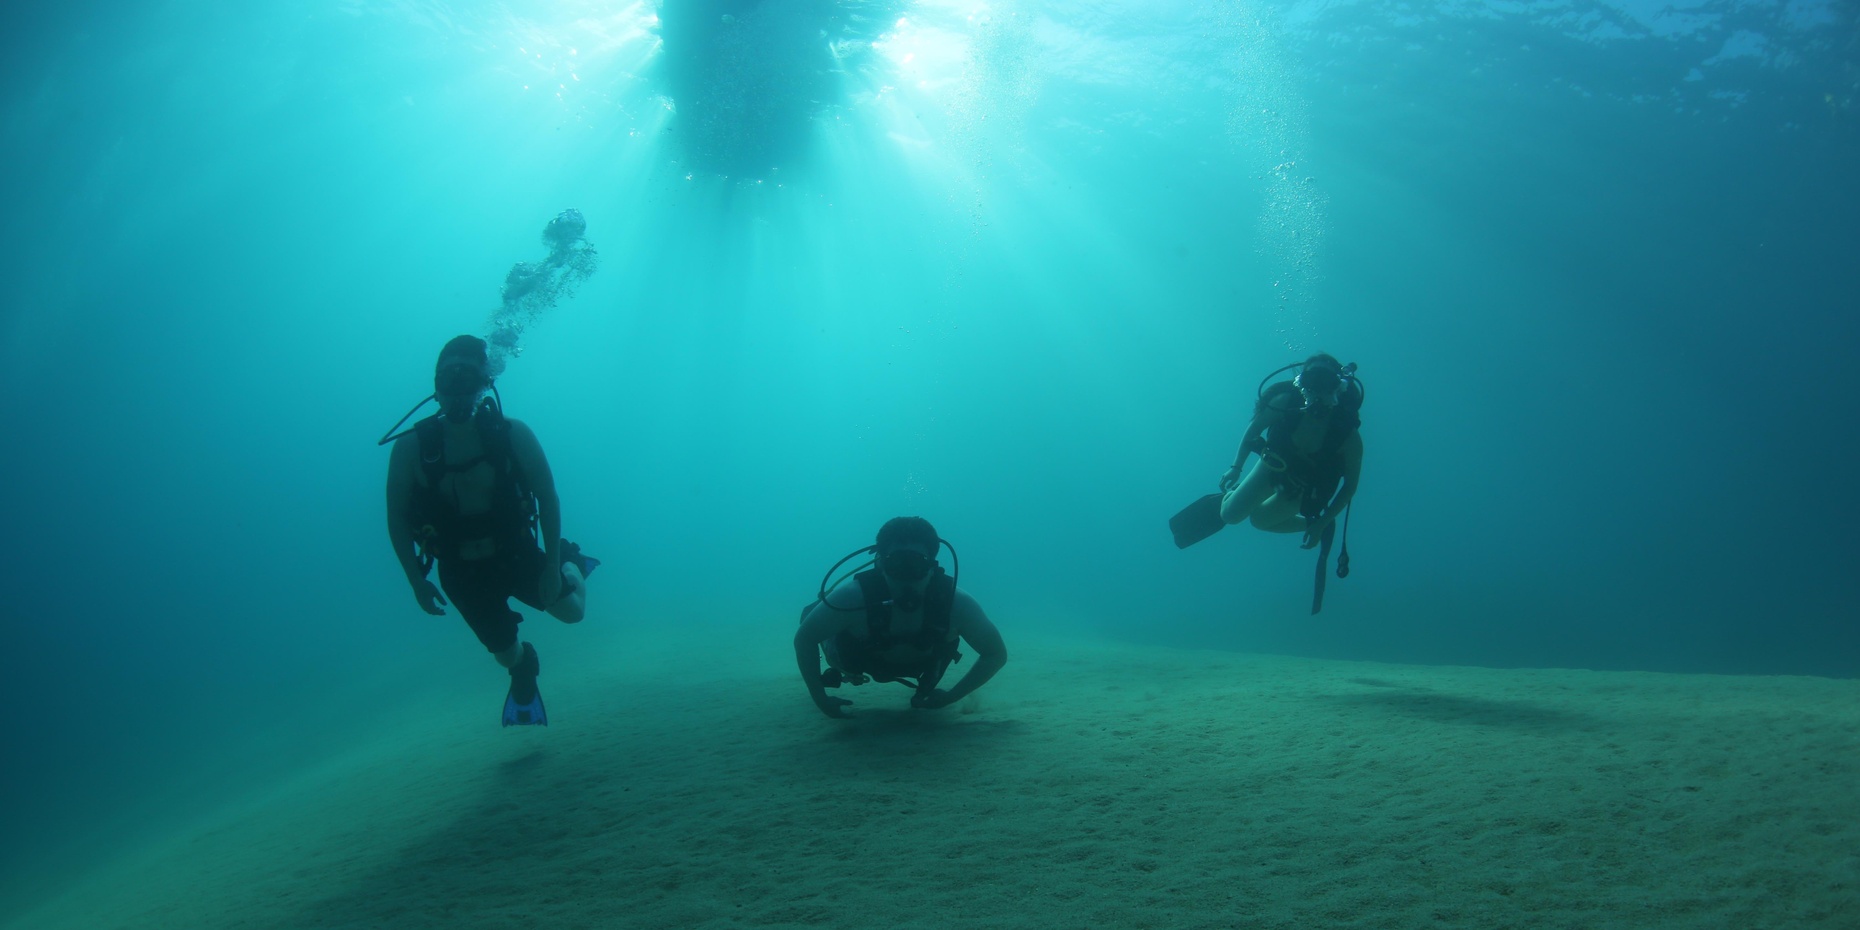 Scuba Diving "Corridor" Experience in Cabo San Lucas